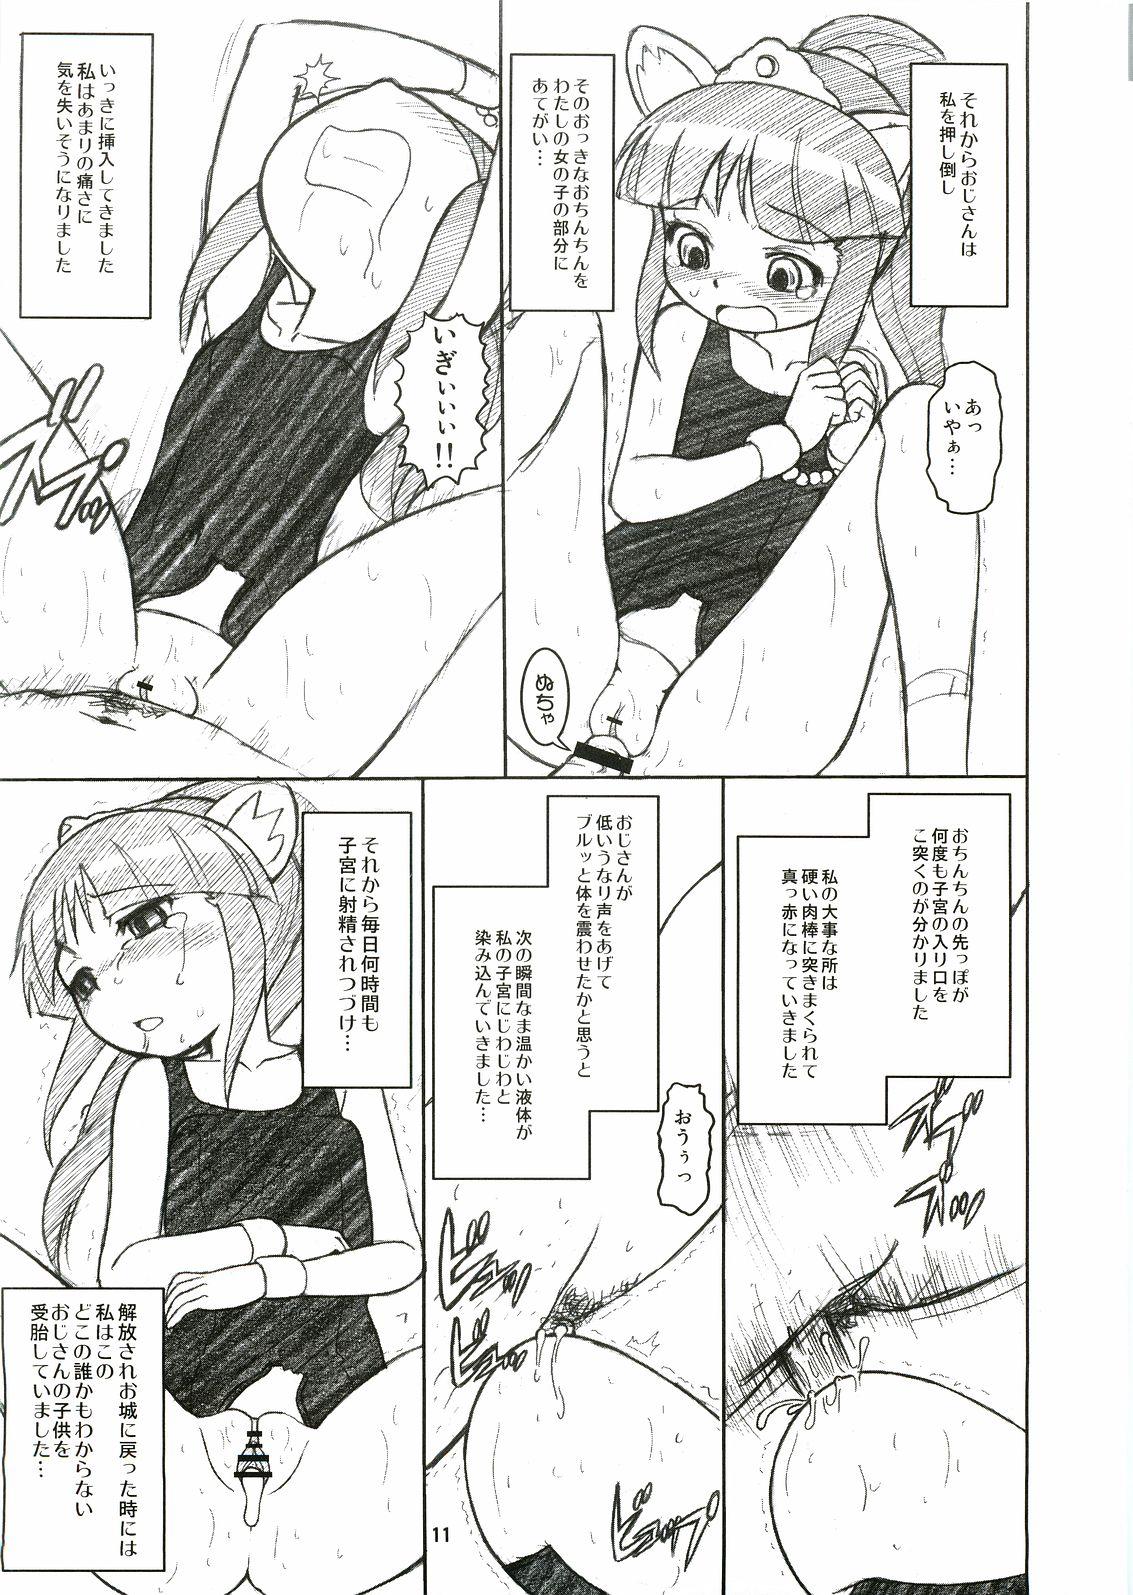 Bunduda Elsa to Rione no Hon - Fushigiboshi no futagohime Lesbians - Page 10